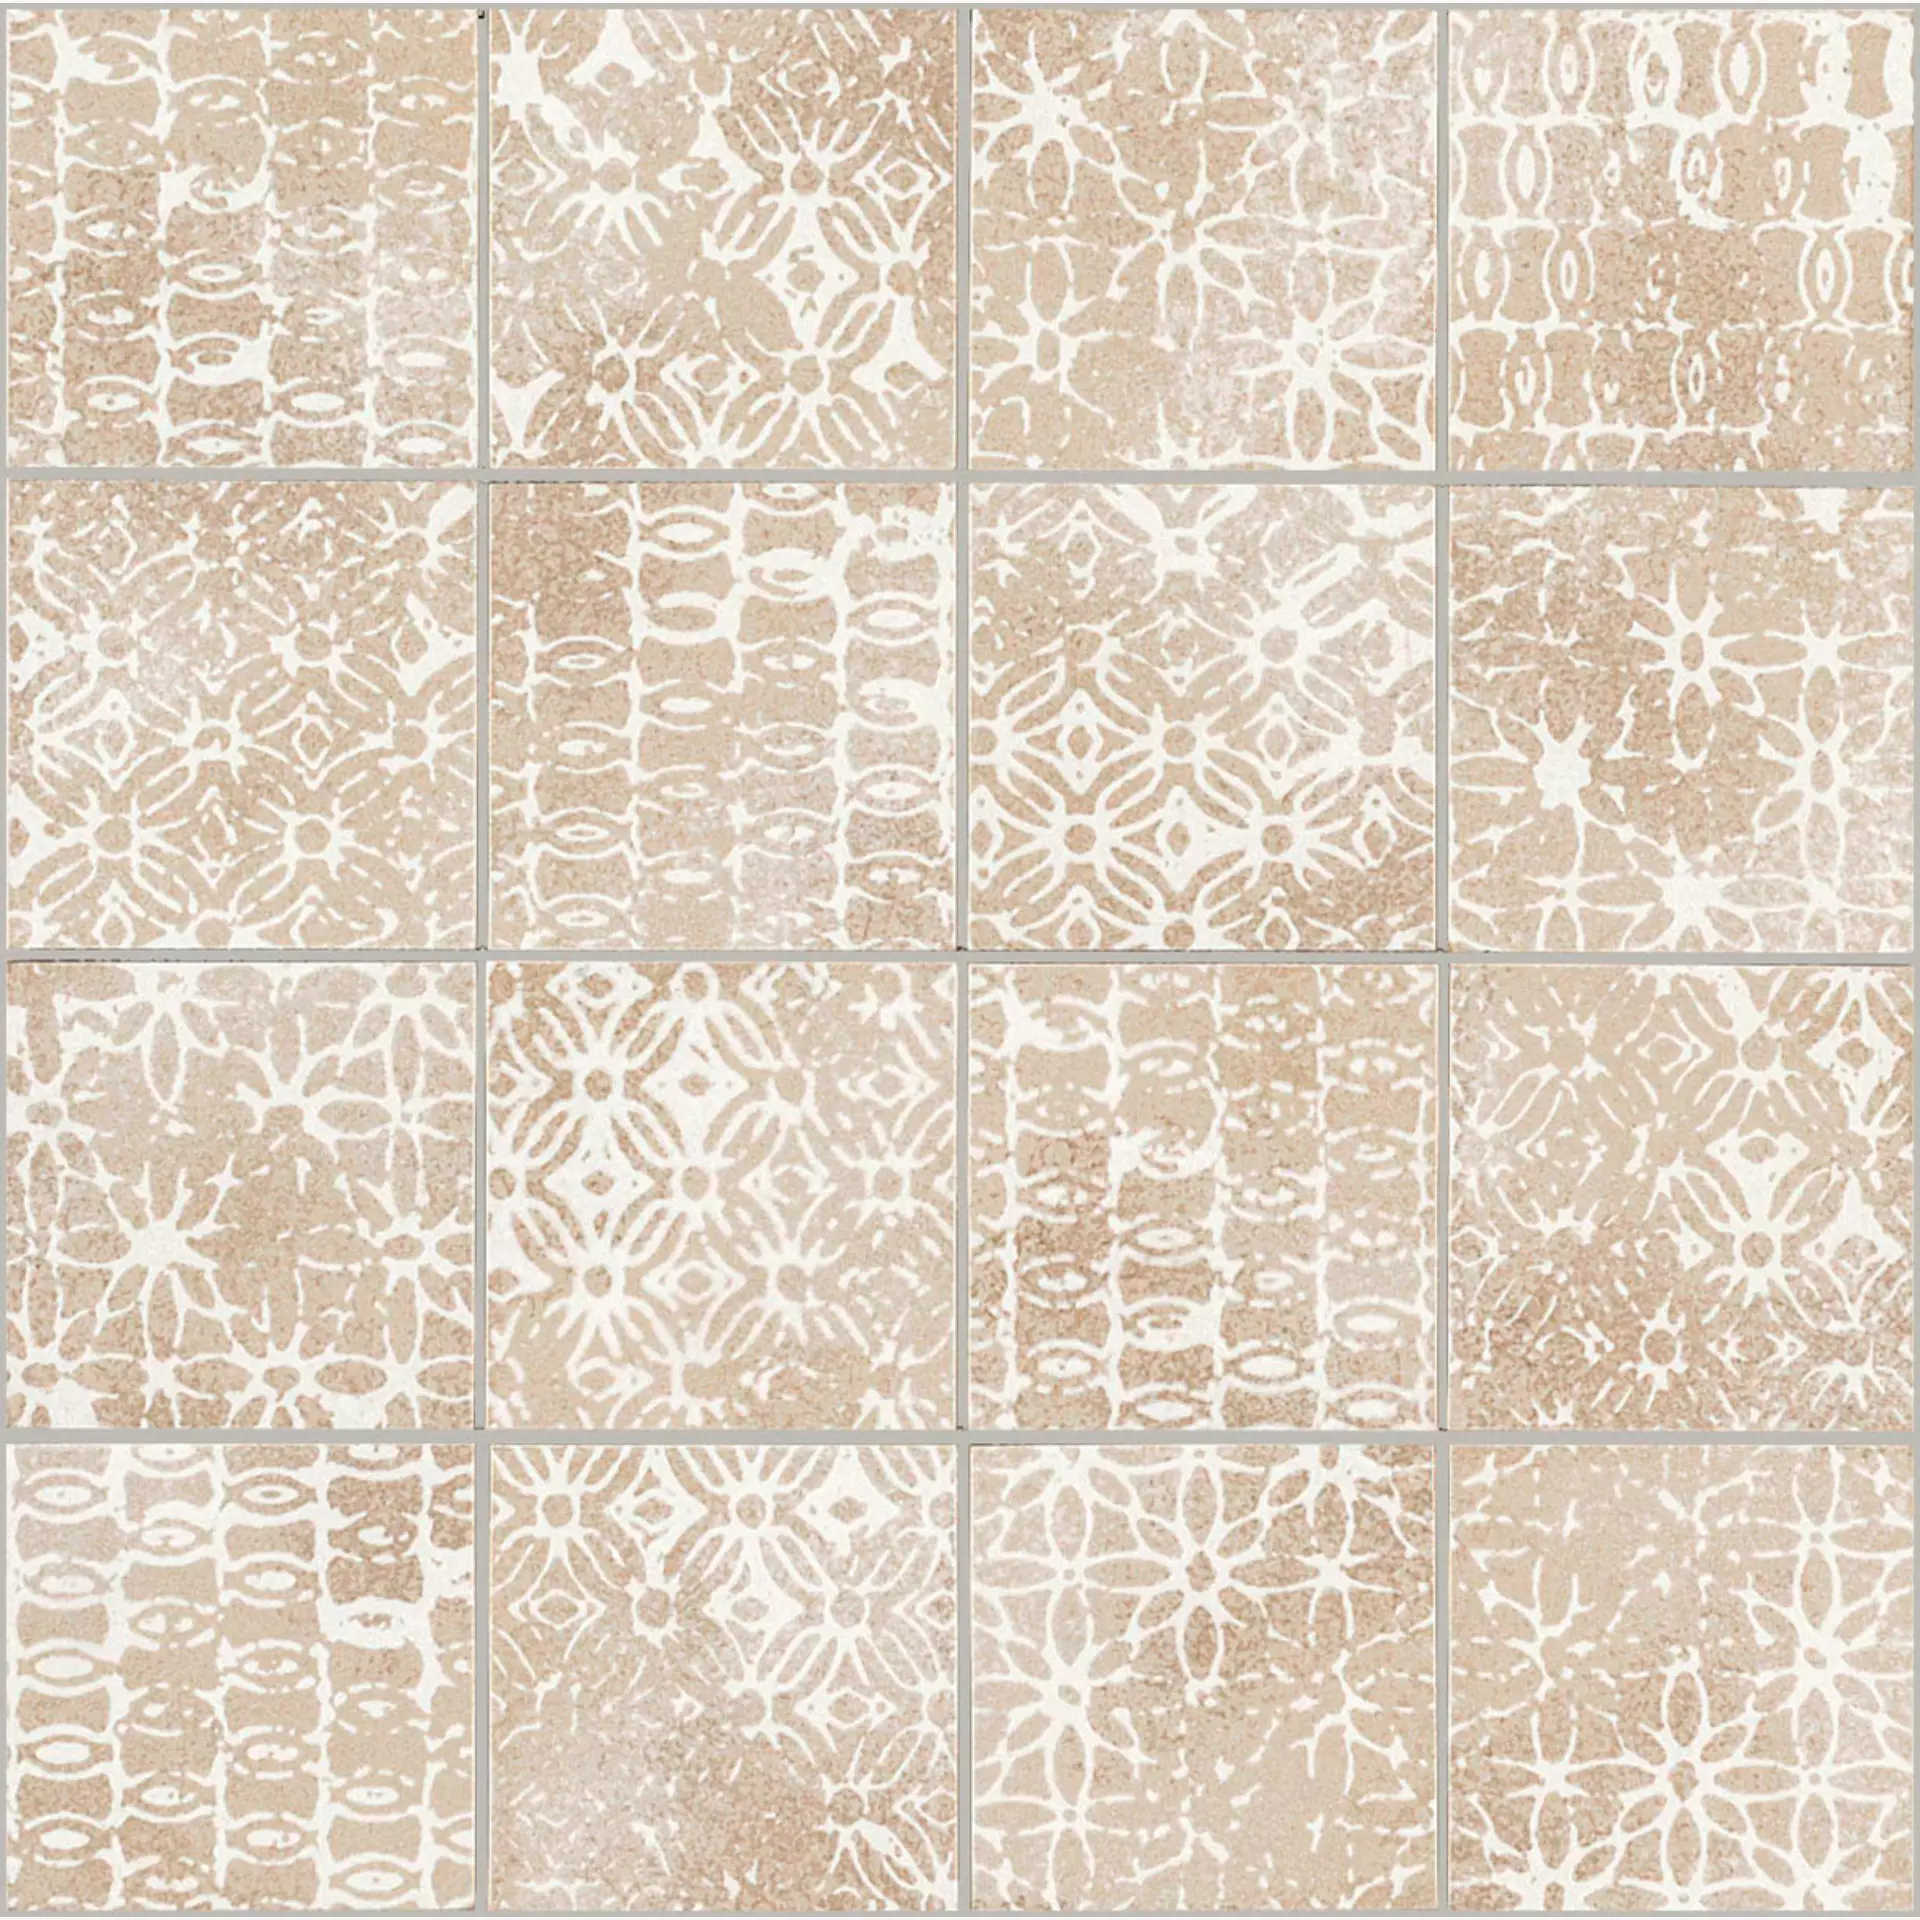 Wandfliese Marazzi Chalk Butter – Sand Naturale – Matt Butter – Sand M0CY matt natur 30x30cm Mosaik Texture 10,5mm